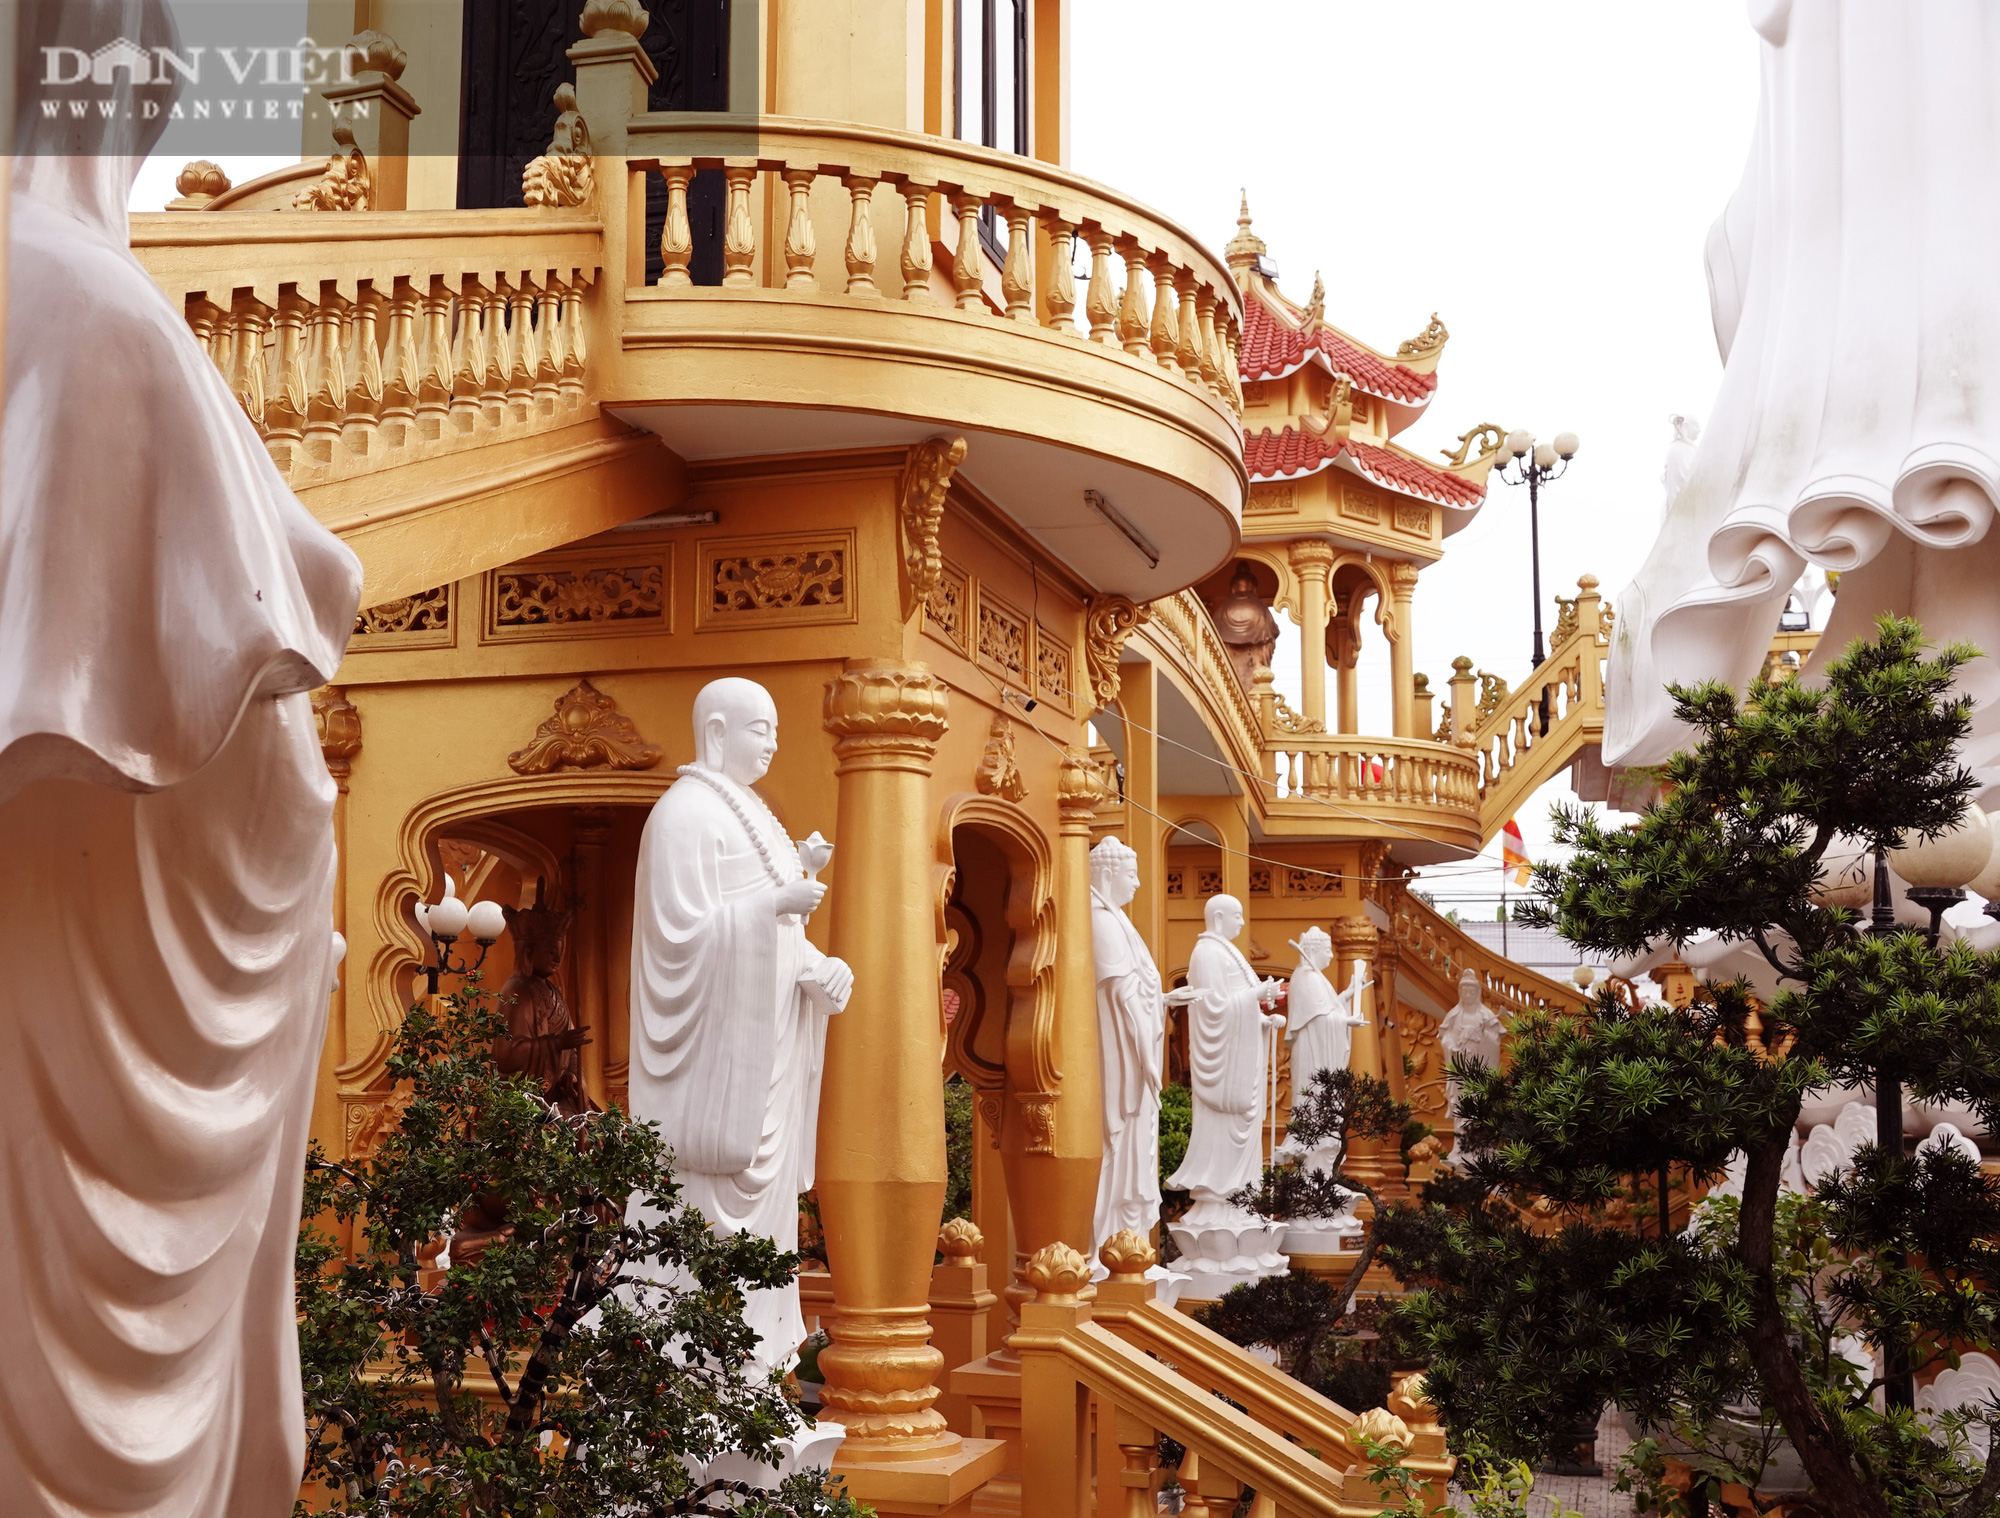 Ngôi chùa ở Cù Lao Giêng với quần thể tượng Phật đạt kỷ lục Việt Nam có gì đặc biệt? - Ảnh 9.